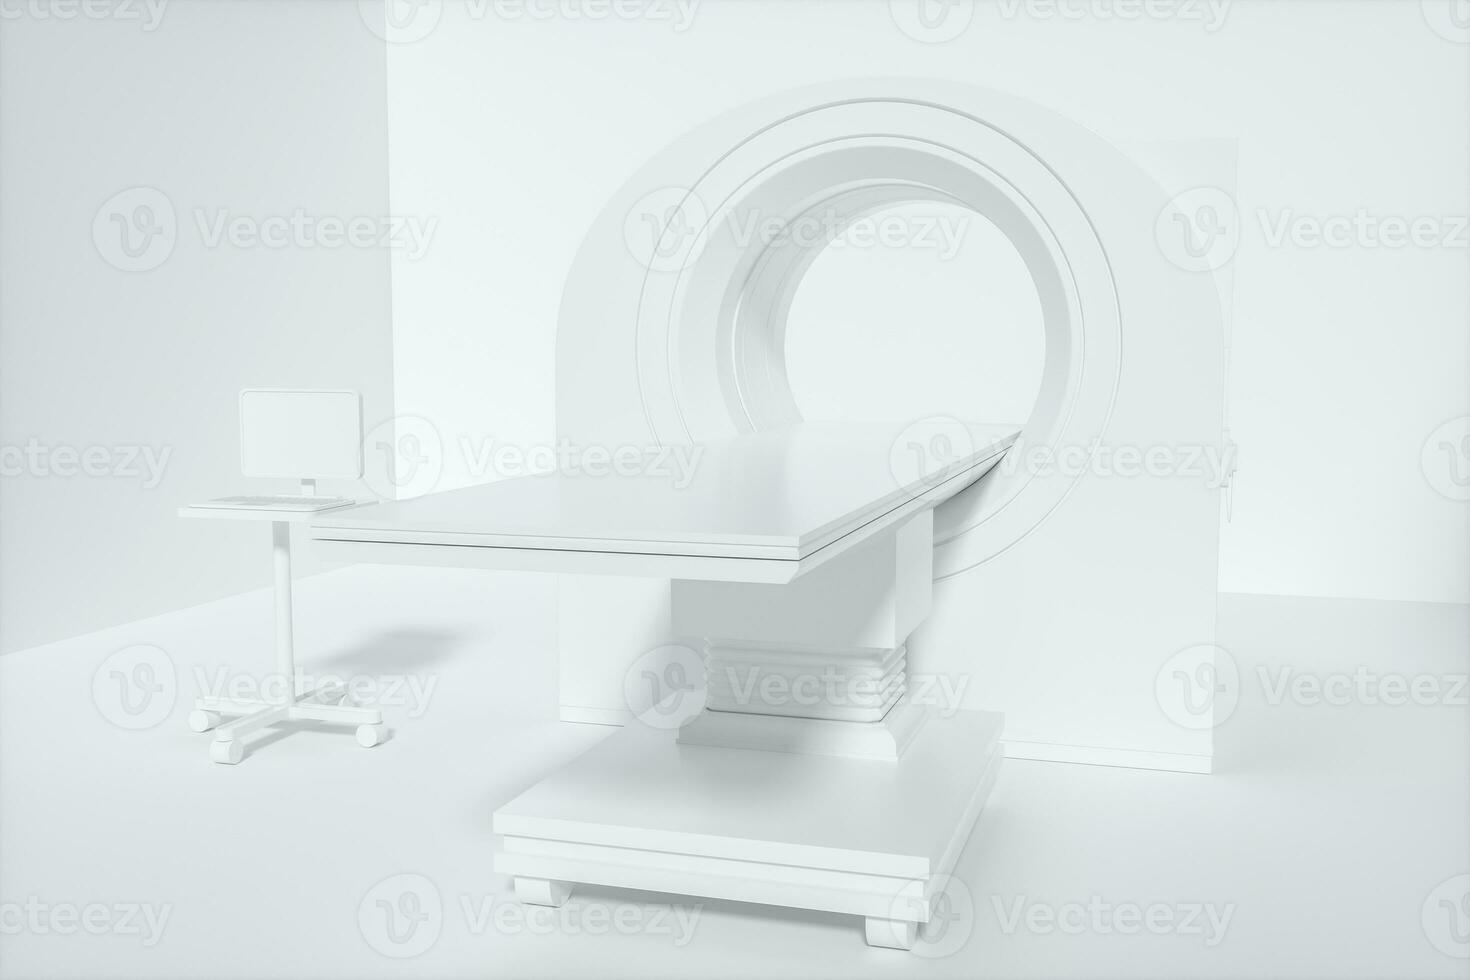 de medicinsk Utrustning ct maskin i de vit tömma rum, 3d tolkning. foto